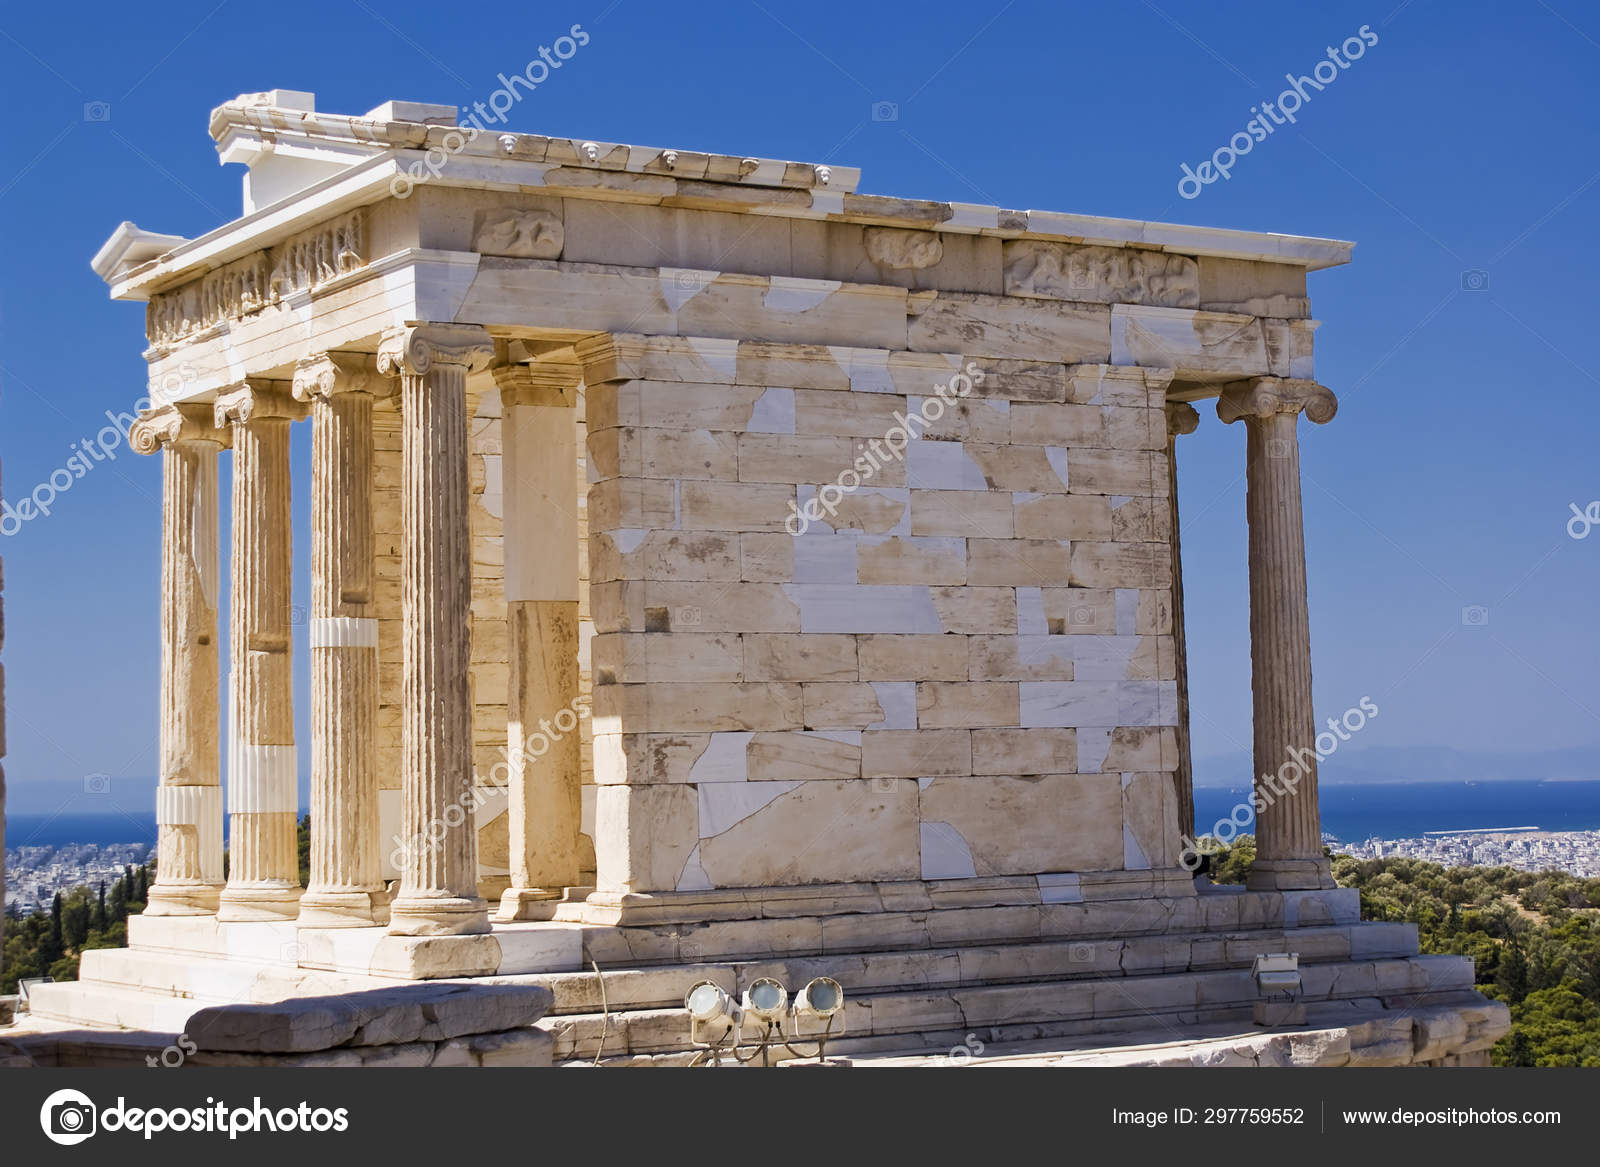 of Athena Acropolis of Athens Stock Photo by 297759552